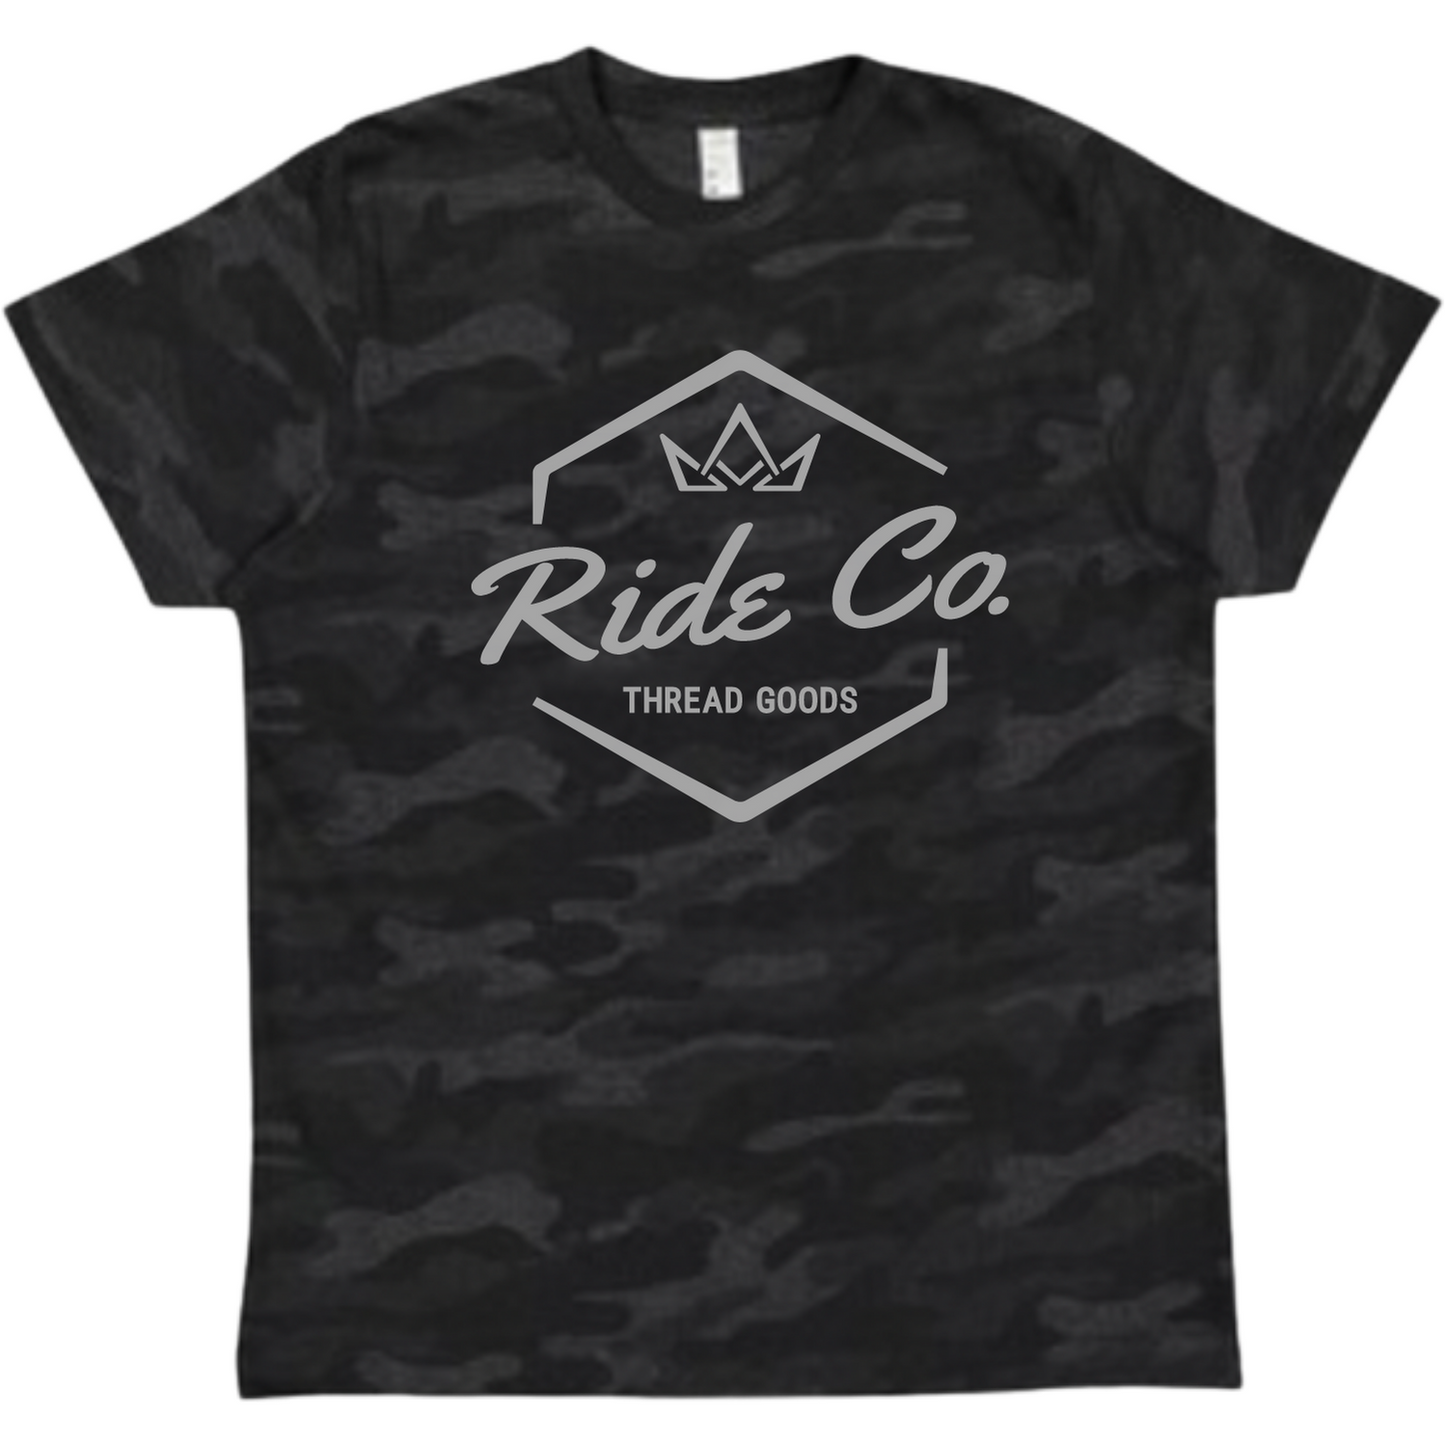 Camiseta juvenil con logotipo de Ride Co.